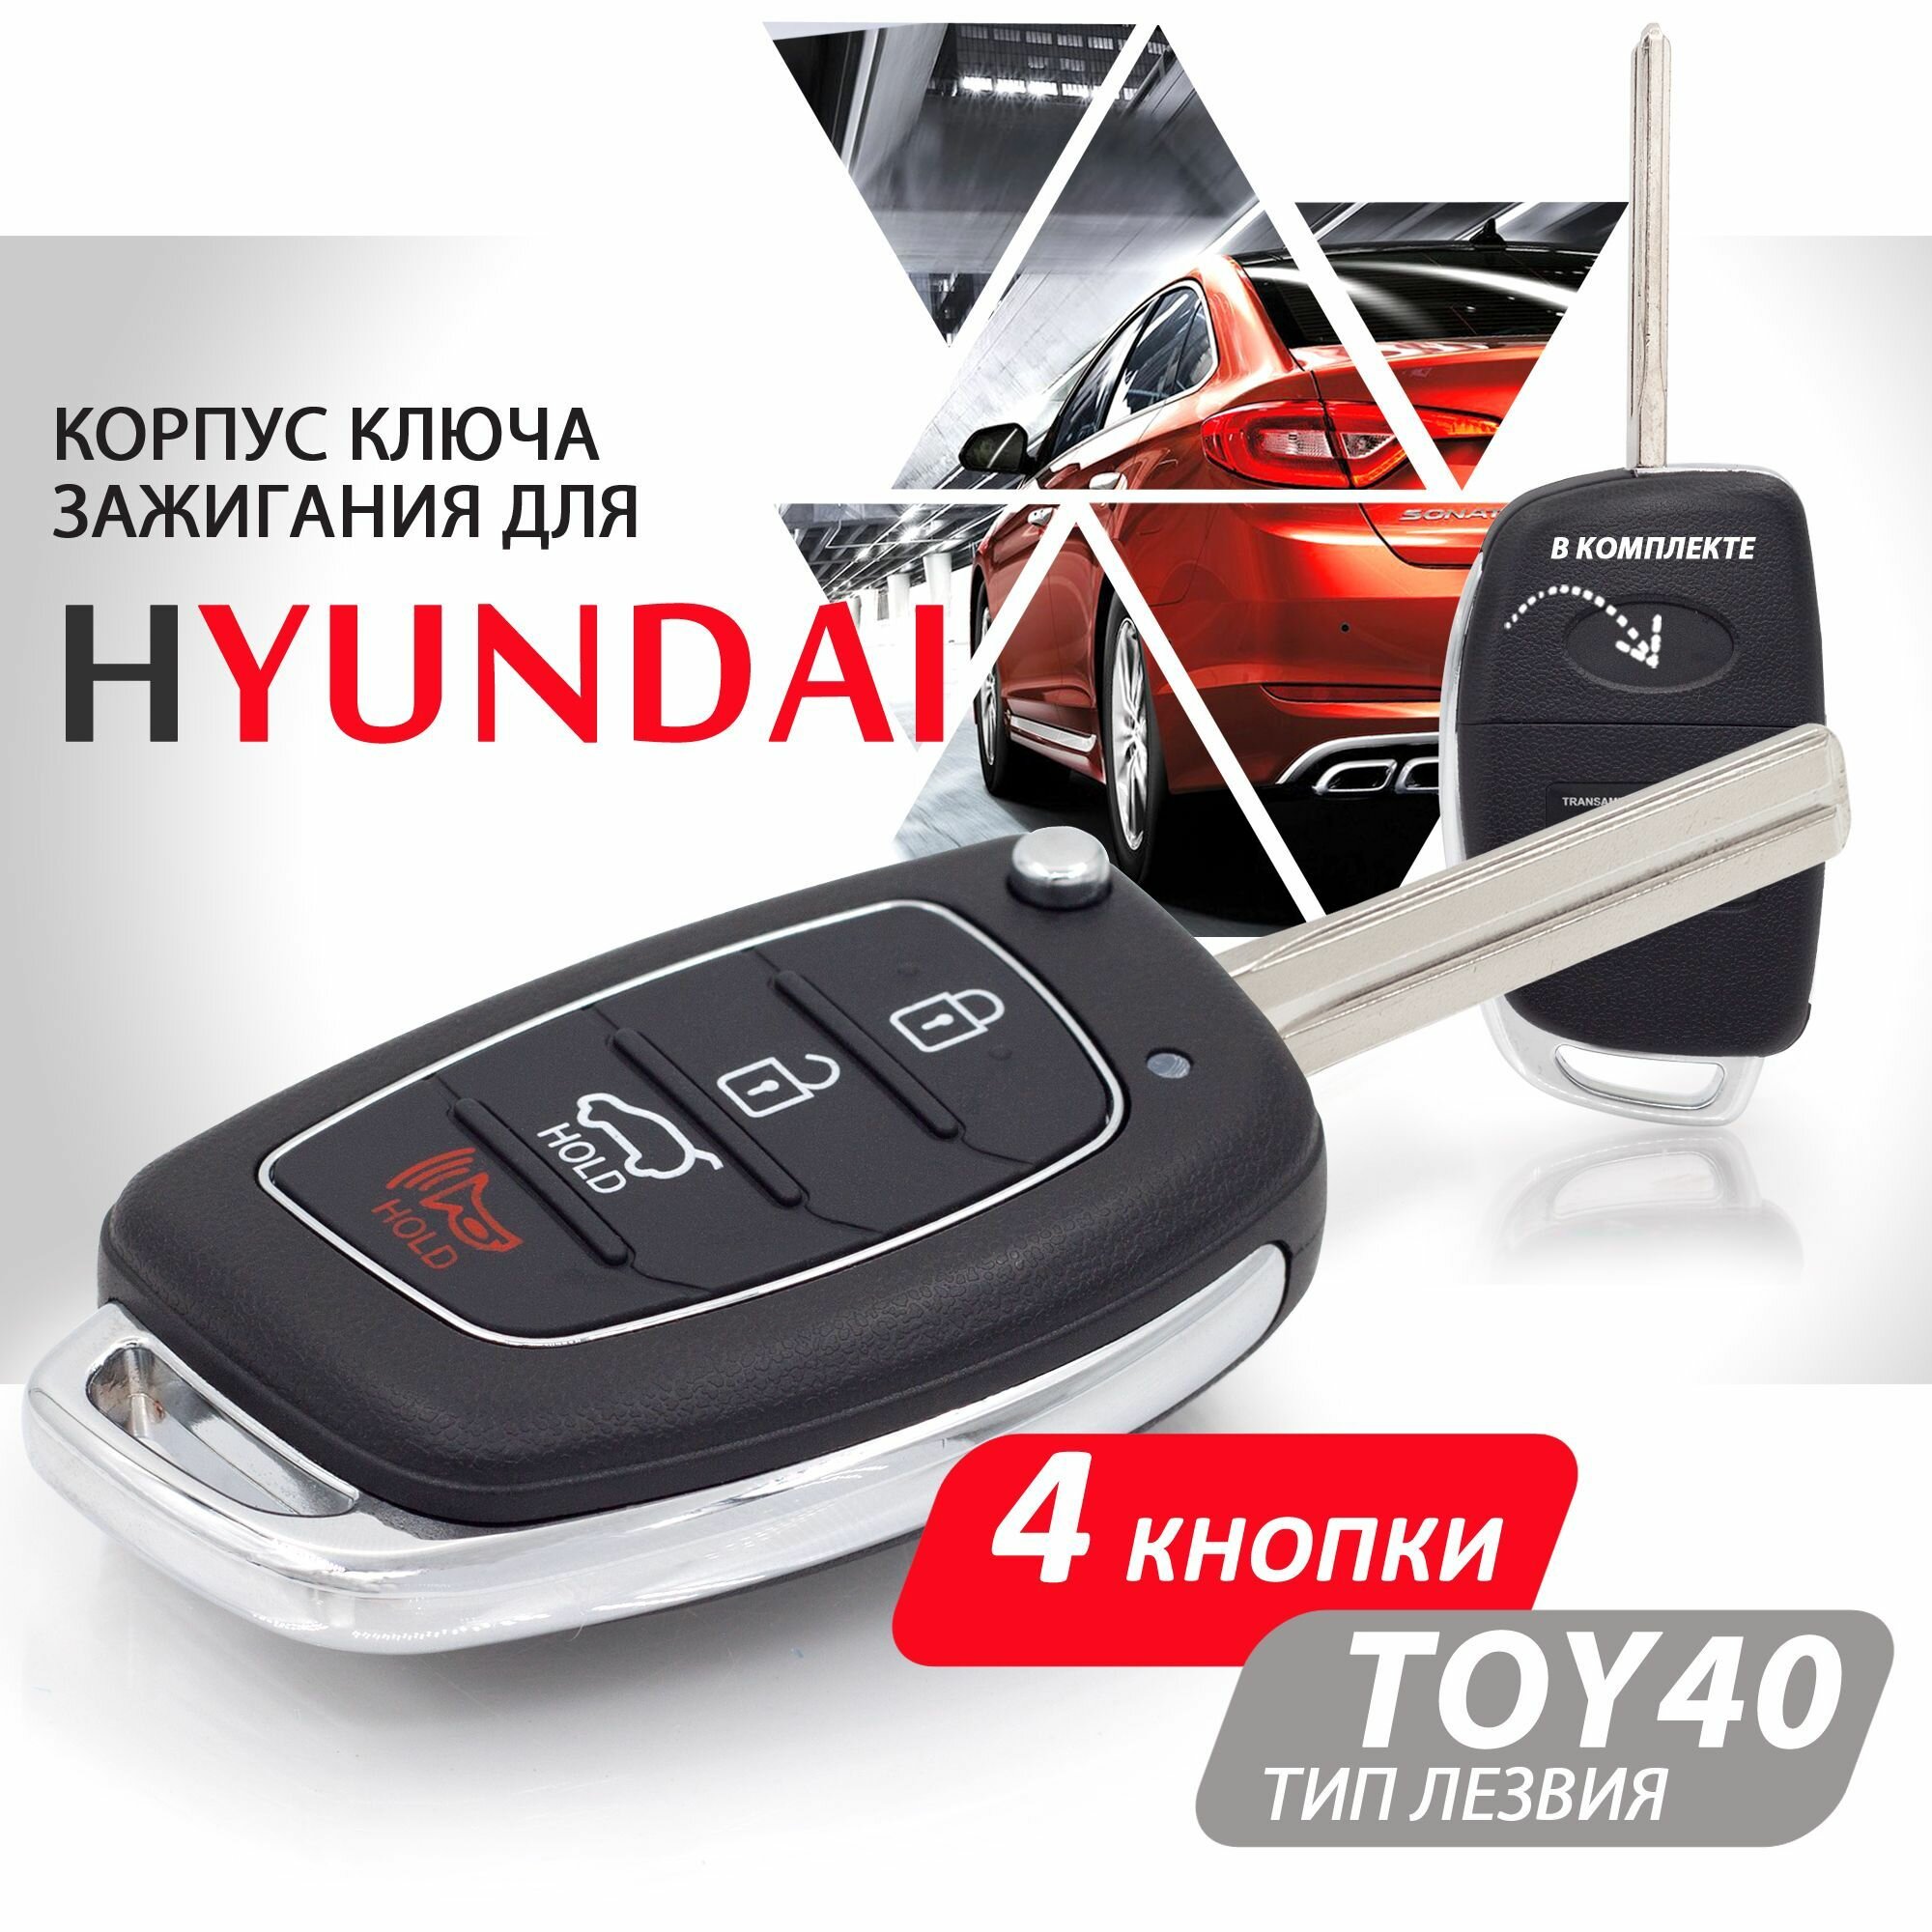 Корпус ключа зажигания для Hyundai Solaris Elantra I20 I30 IX35 / Хендай Солярис Элантра - 1 штука (4х кнопочный ключ) лезвие TOY40